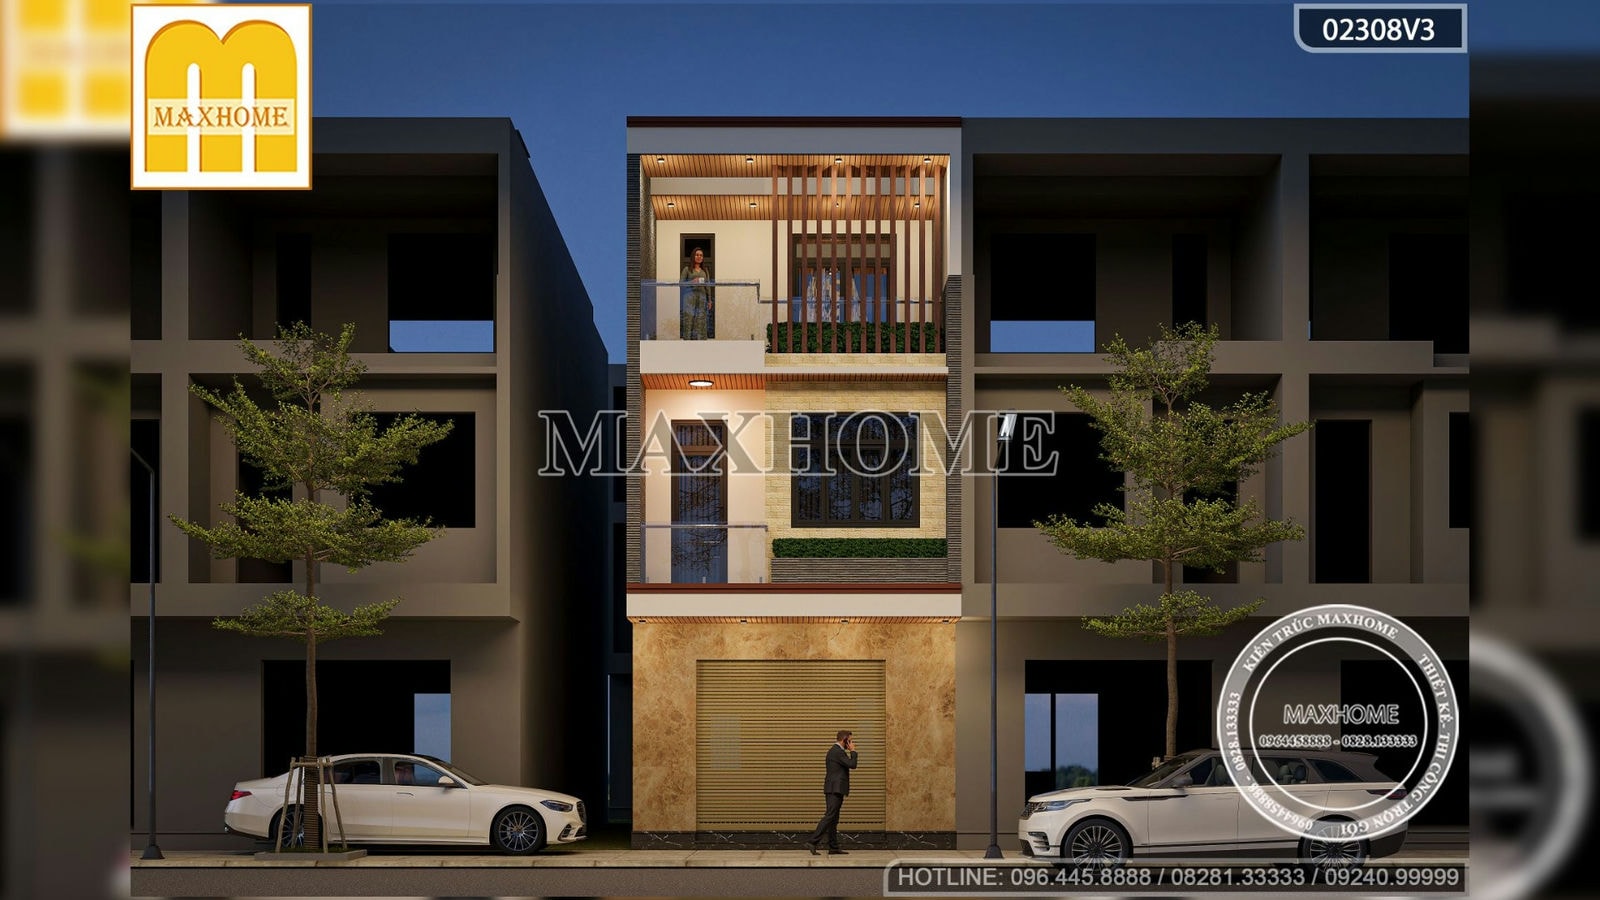 Thiết kế nhà phố 3 tầng 250m2 siêu đẹp có giá từ 1,5 tỷ đồng | MH02154